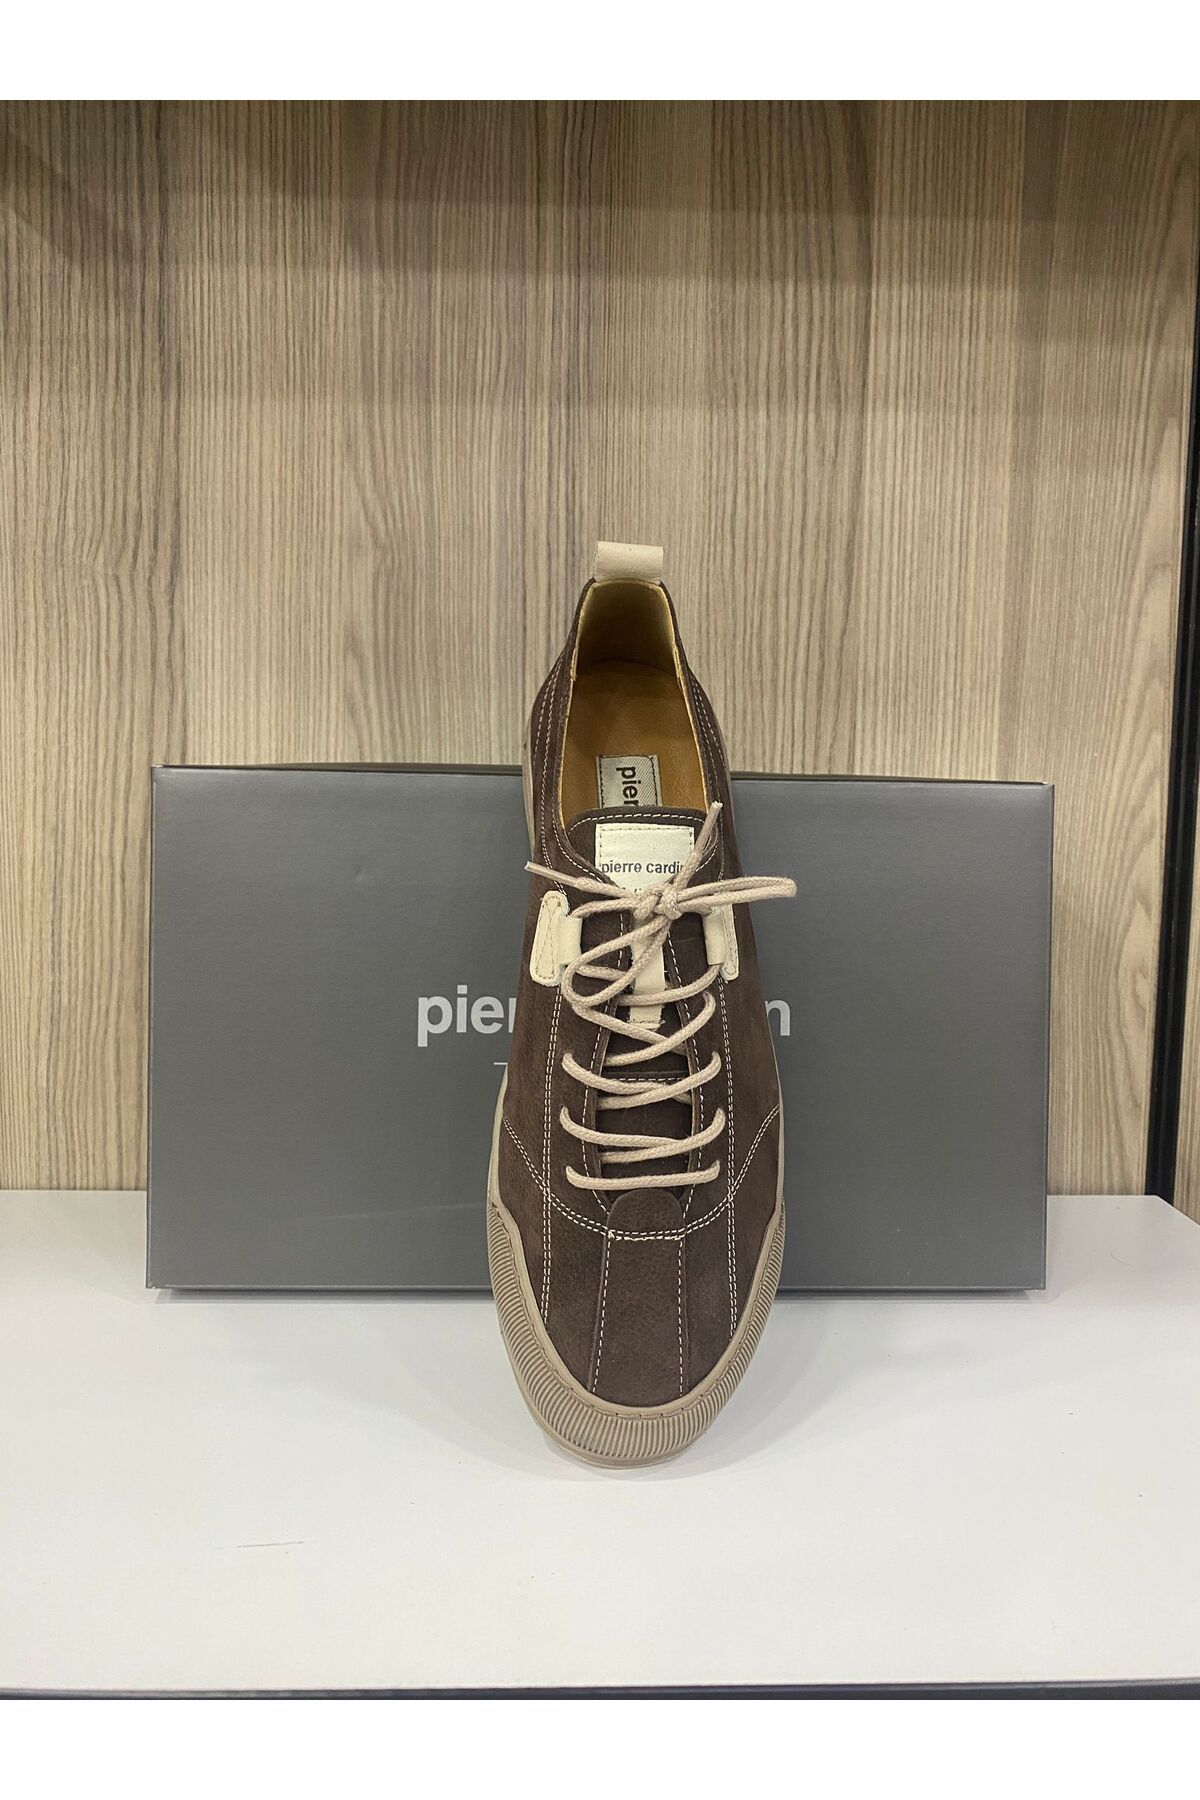 Pierre Cardin Comfort Deri Ayakkabı